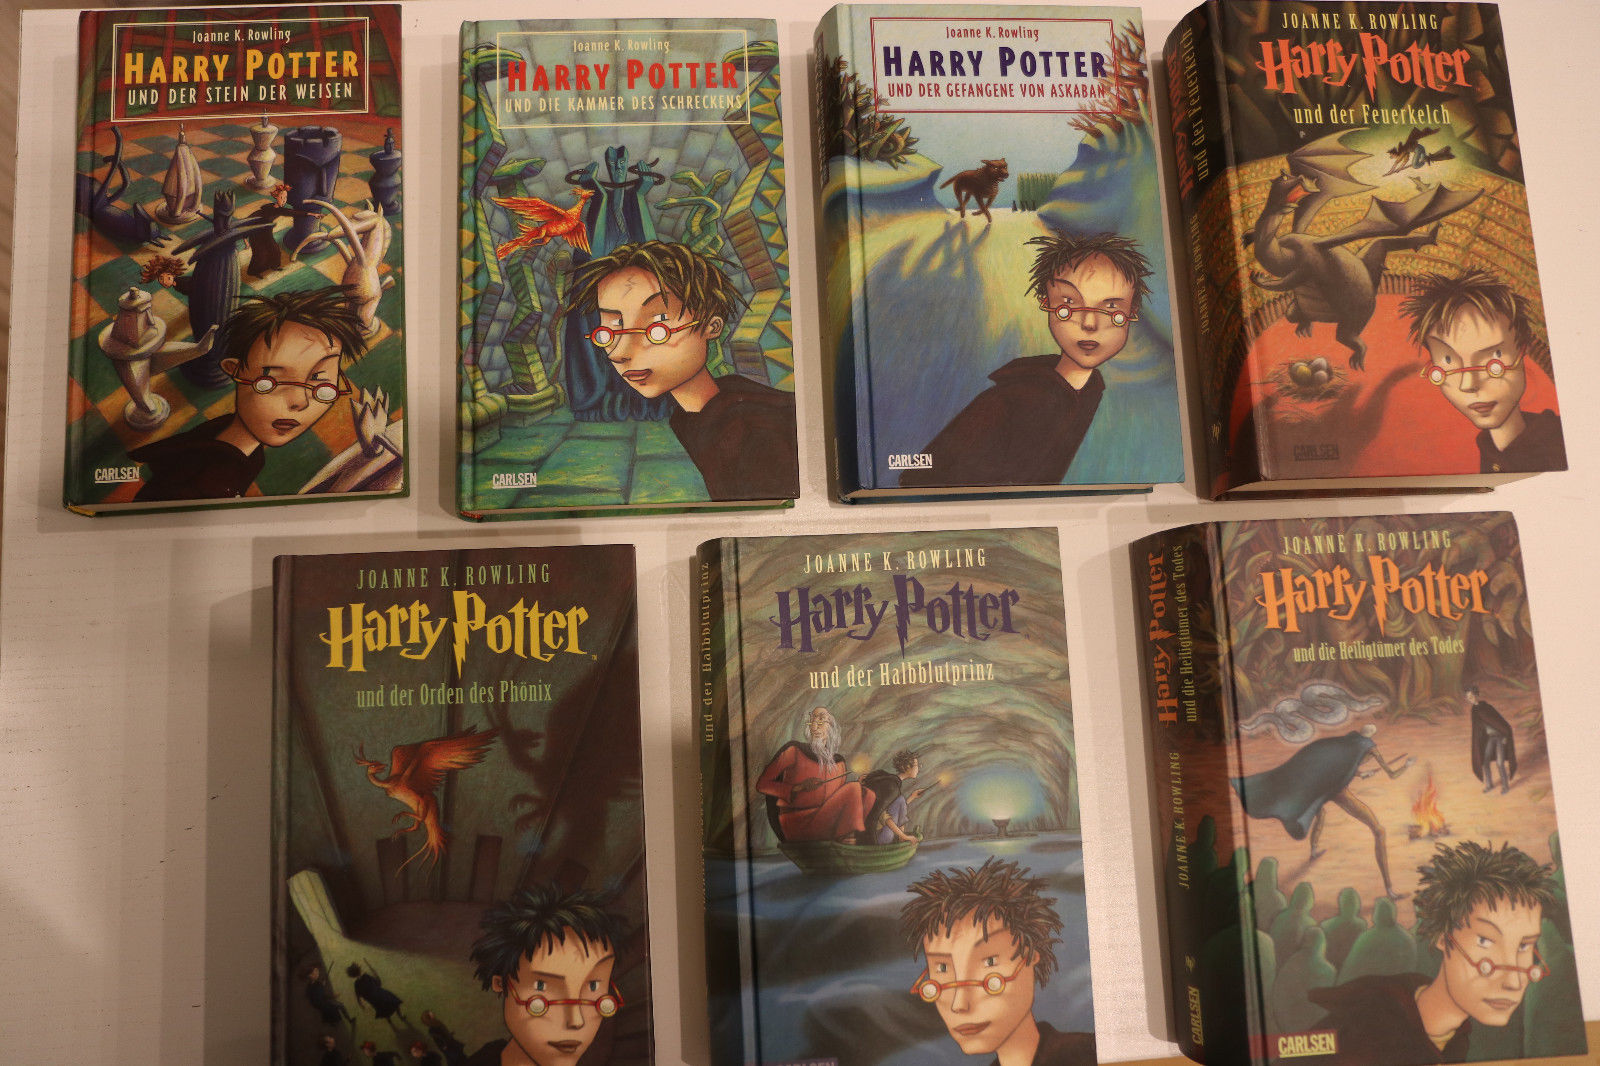 Harry Potter Bücher, gebunden, Band 1-7, sehr gut erhalten